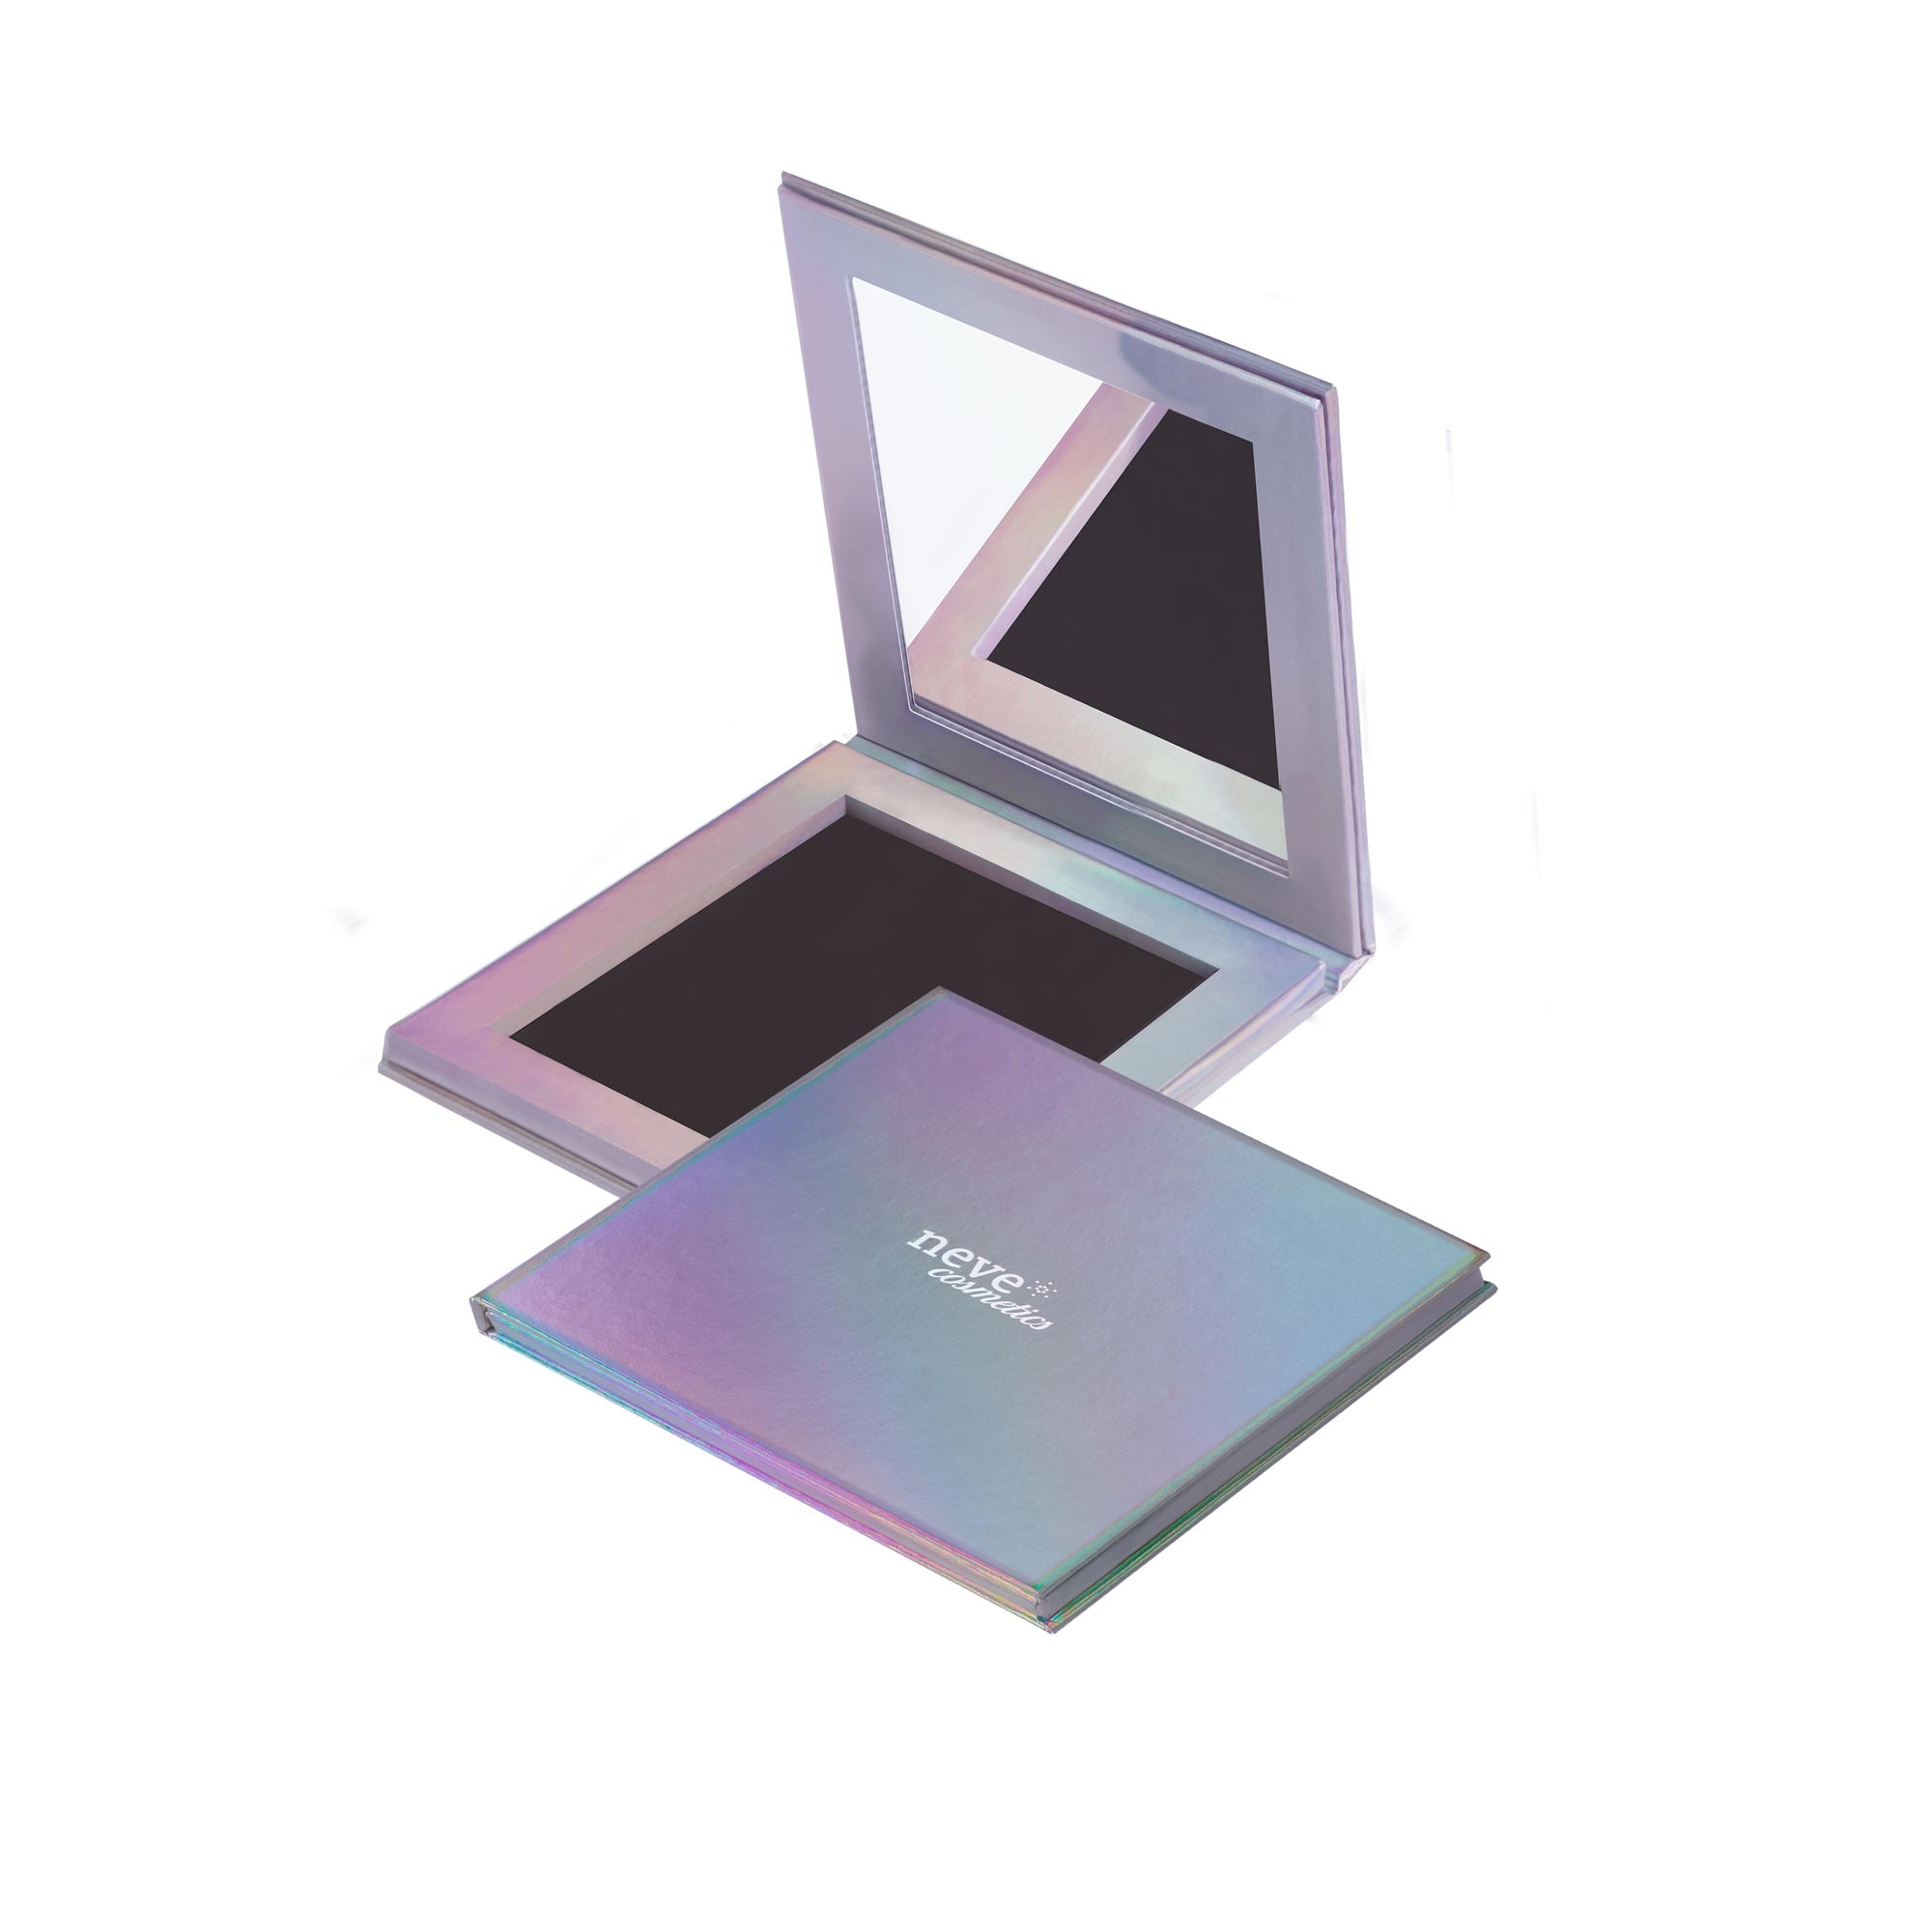 Palette da 4 colori olografica personalizzabile e magnetica con specchio.